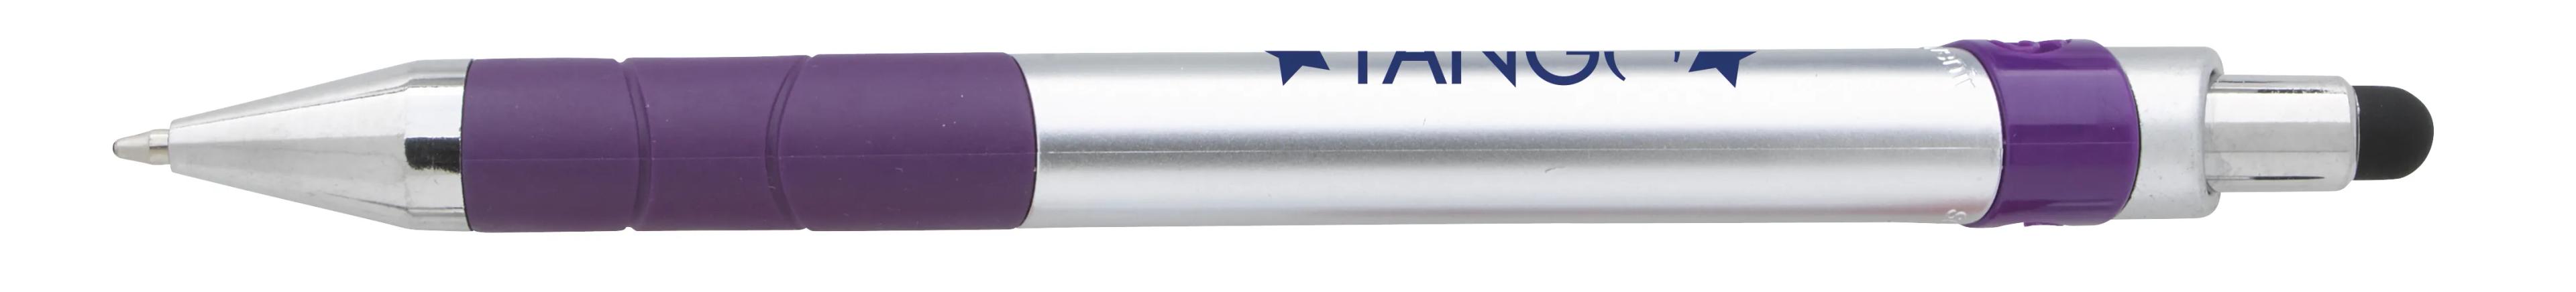 Souvenir® Rize Stylus Pen 1 of 28